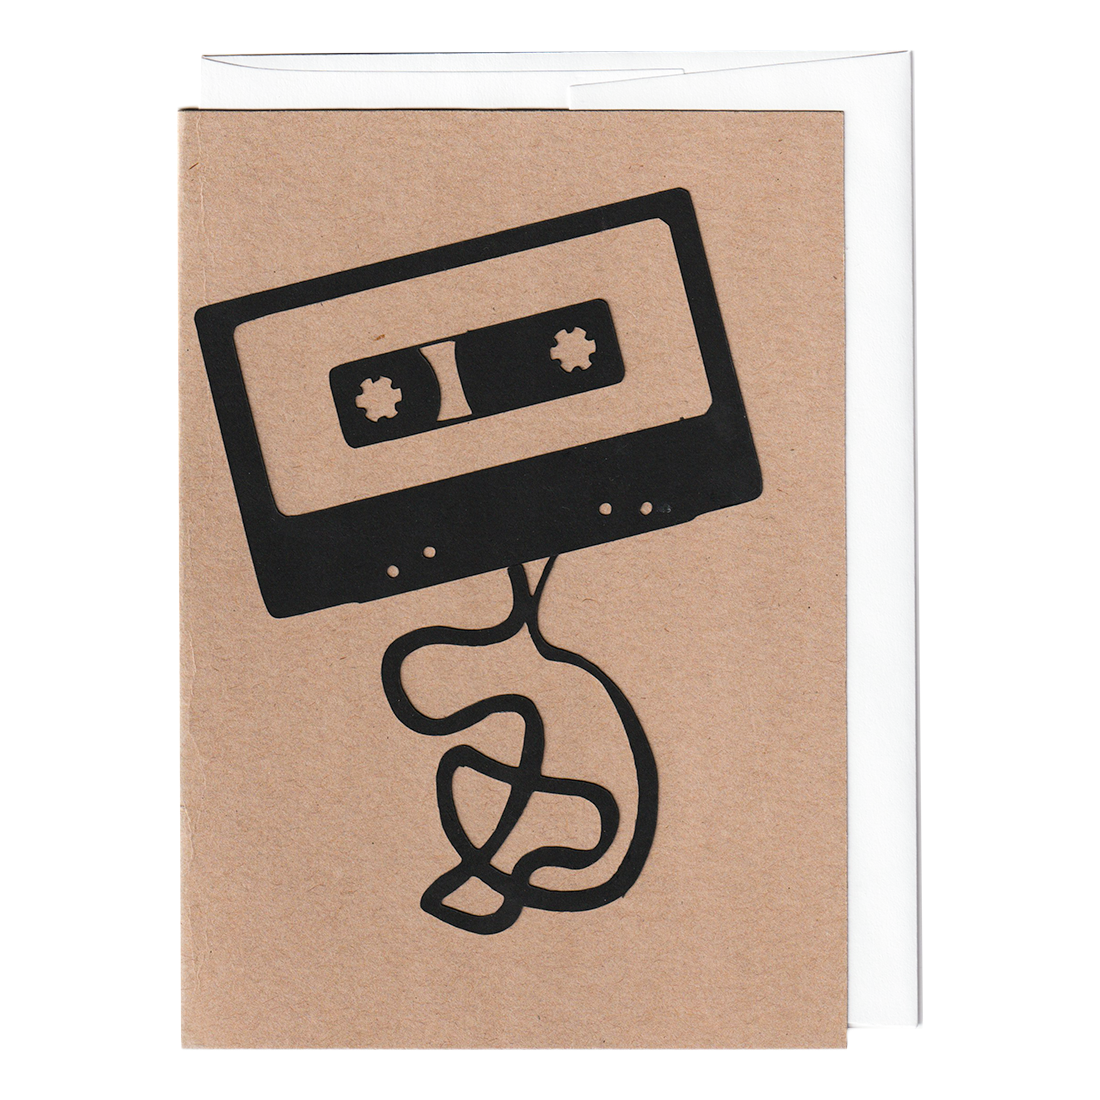 Cassette handmade cut paper card